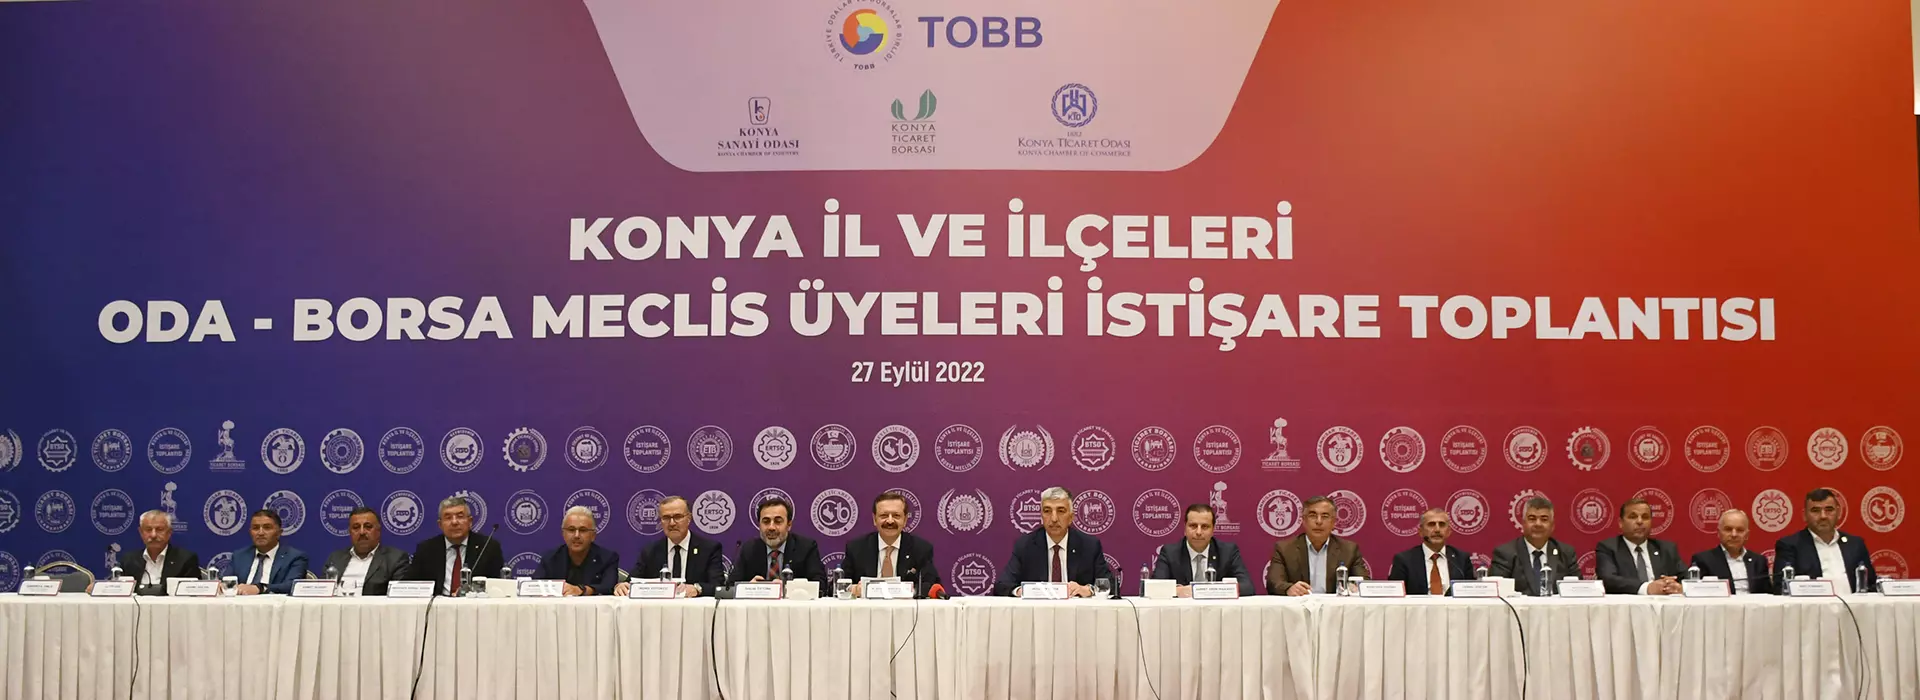 Konya İl ve İlçeleri Oda-Borsa Meclis Üyeleri İstişare Toplantısı, TOBB Başkanı Hisarcıklıoğlu’nun katılımı ile yapıldı